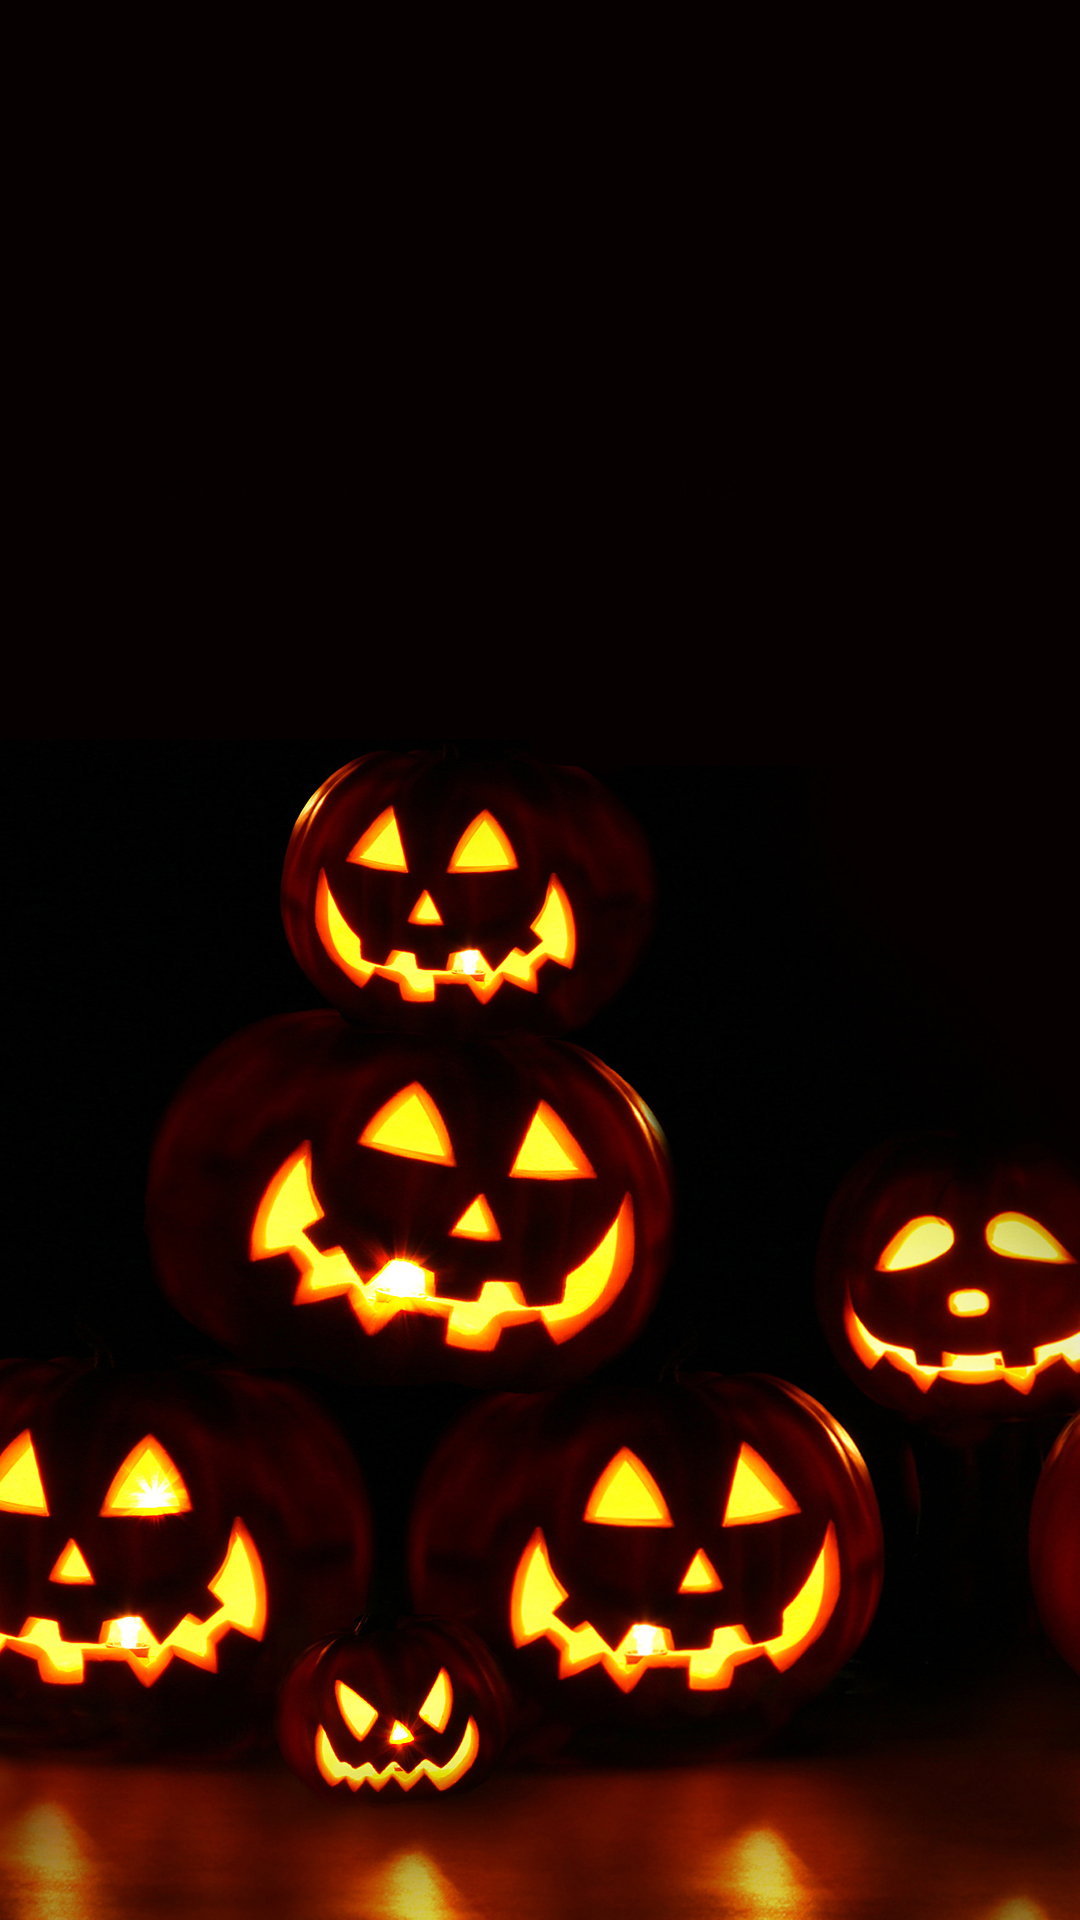  Halloween  iPhone  Backgrounds  PixelsTalk Net